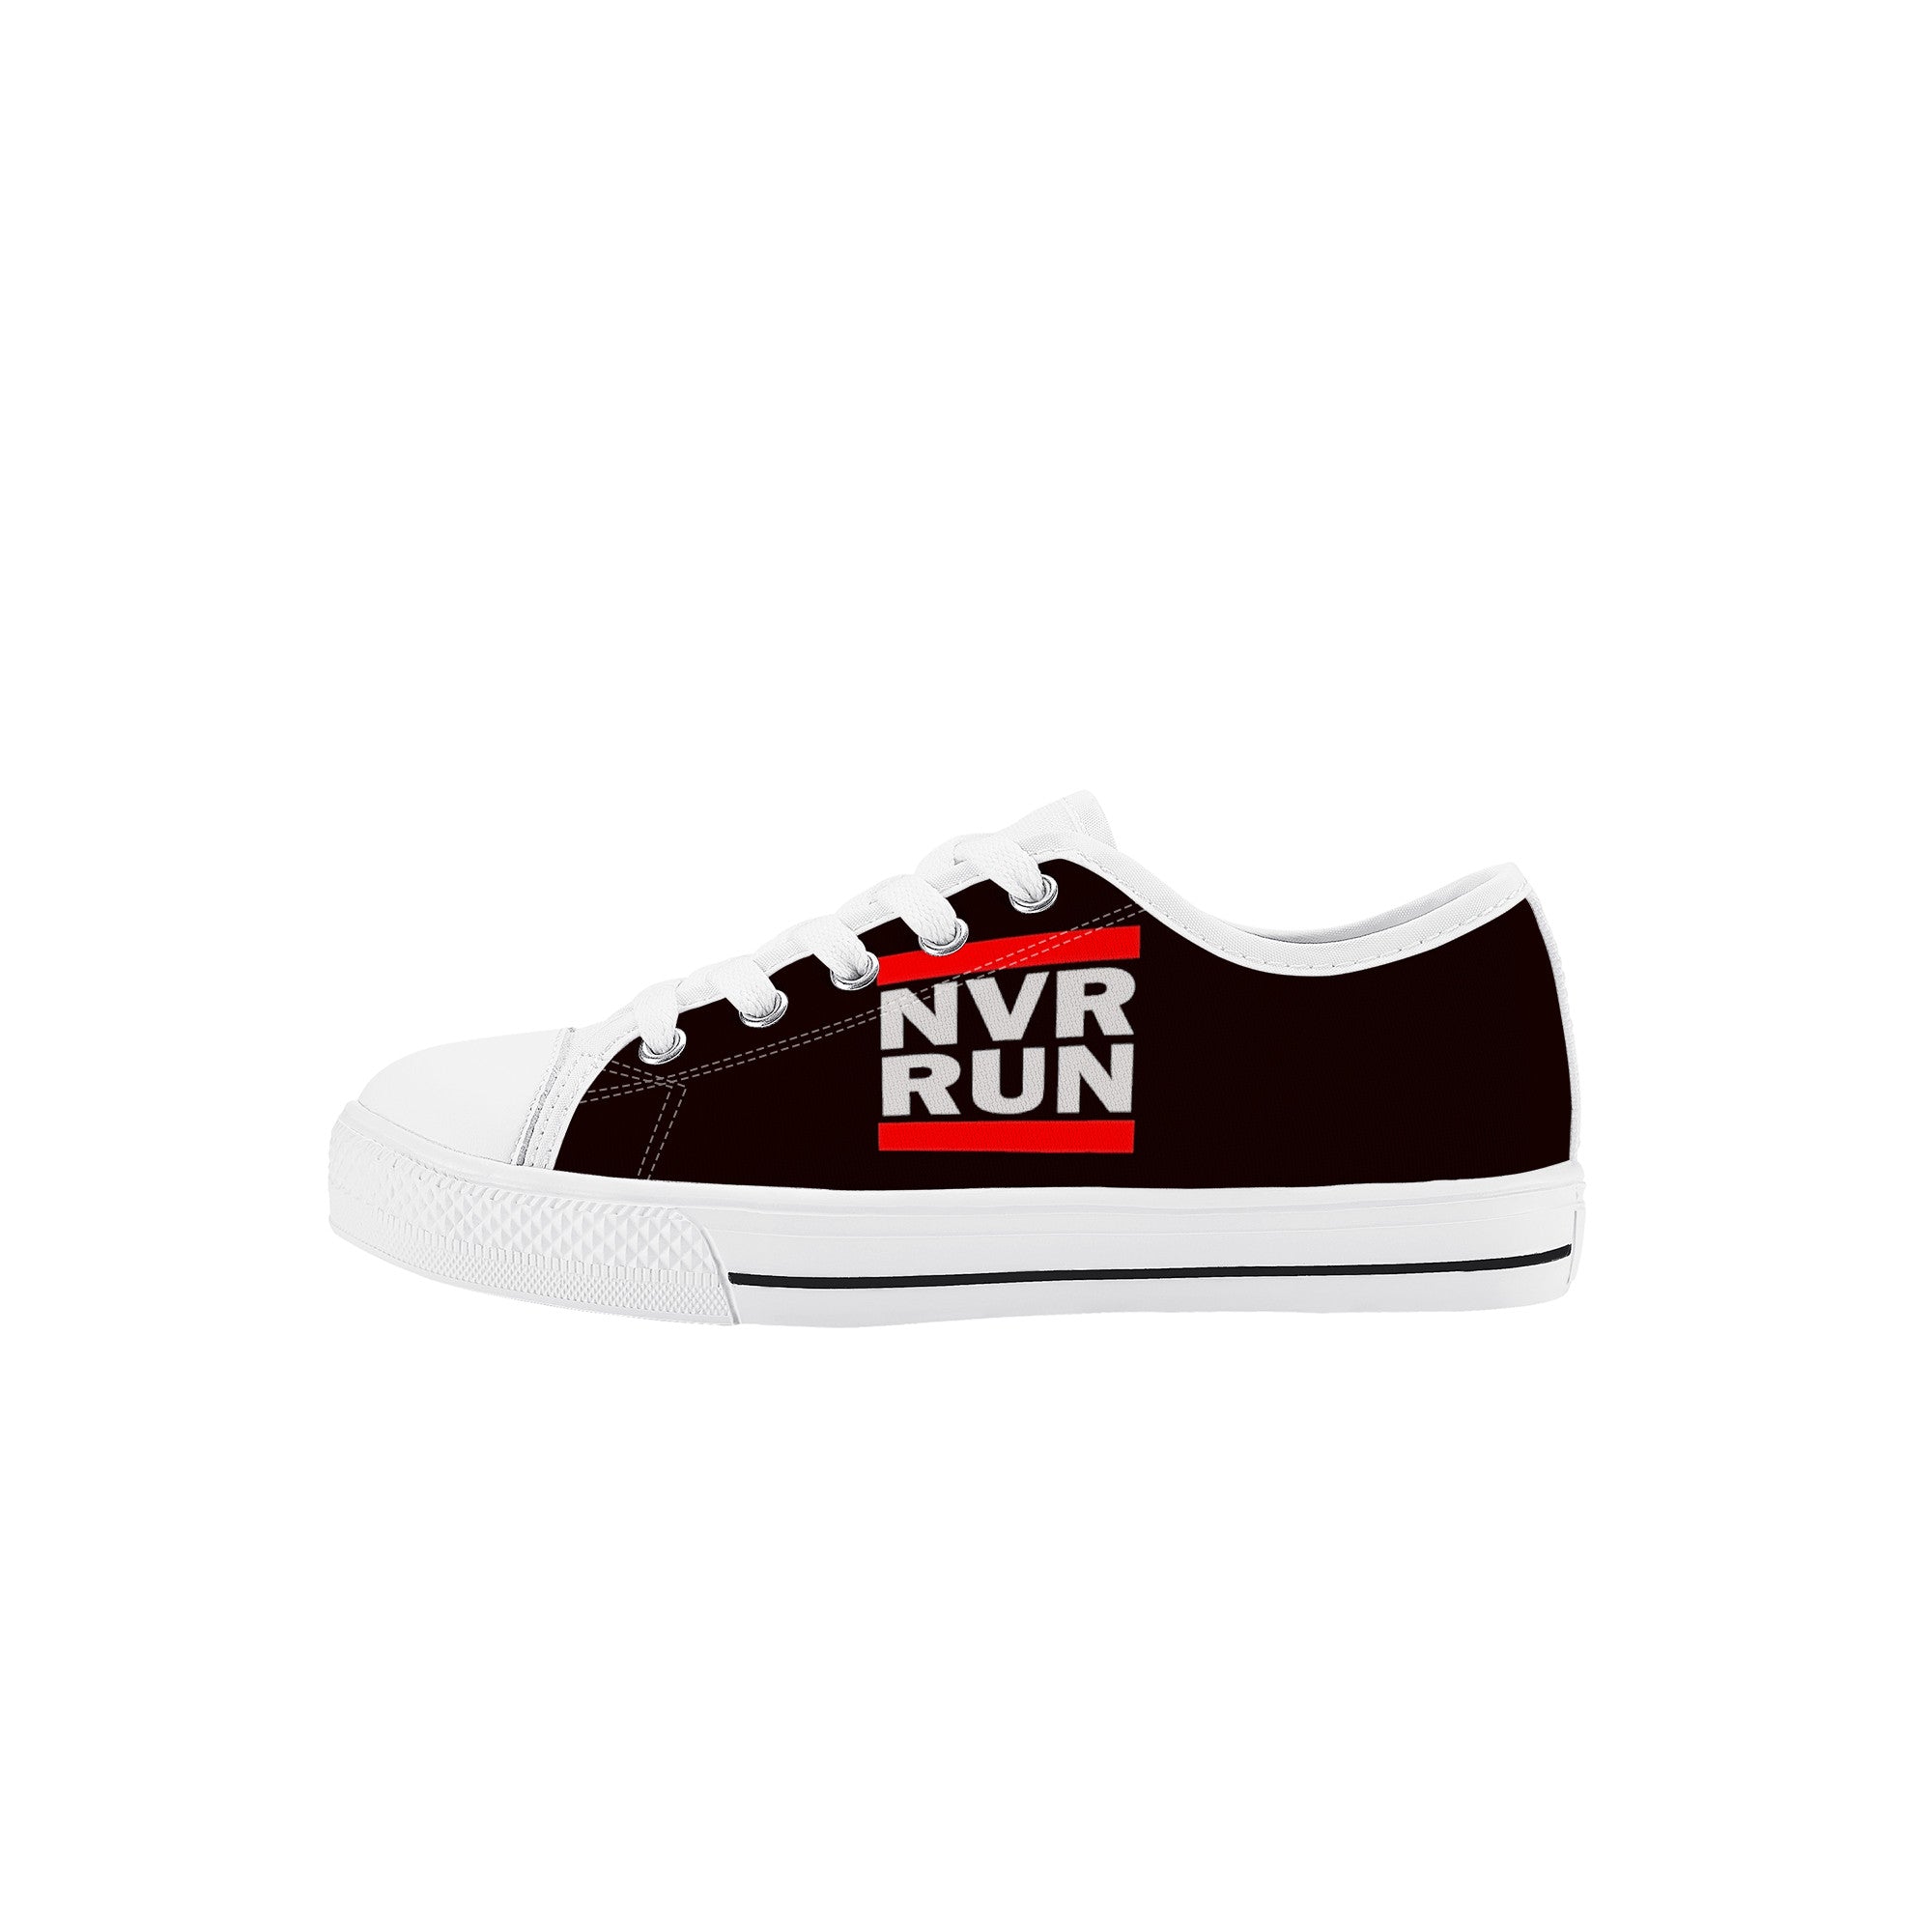 NVR RUN - Kids Low Top Canvas Shoes - Shoe Zero